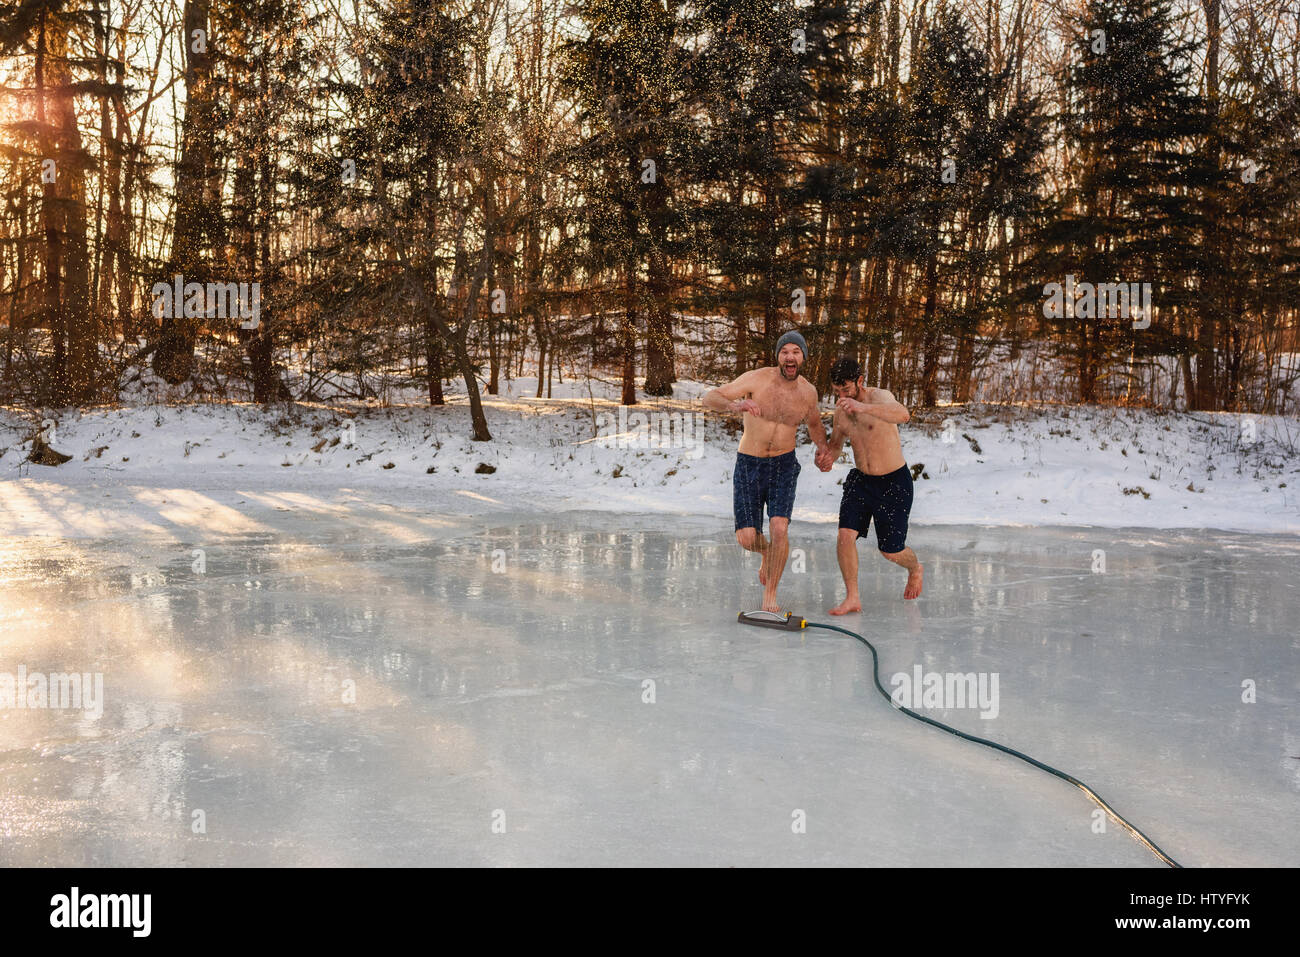 Deux hommes en shorts qui traverse le lac gelé sprinkleur holding hands Banque D'Images